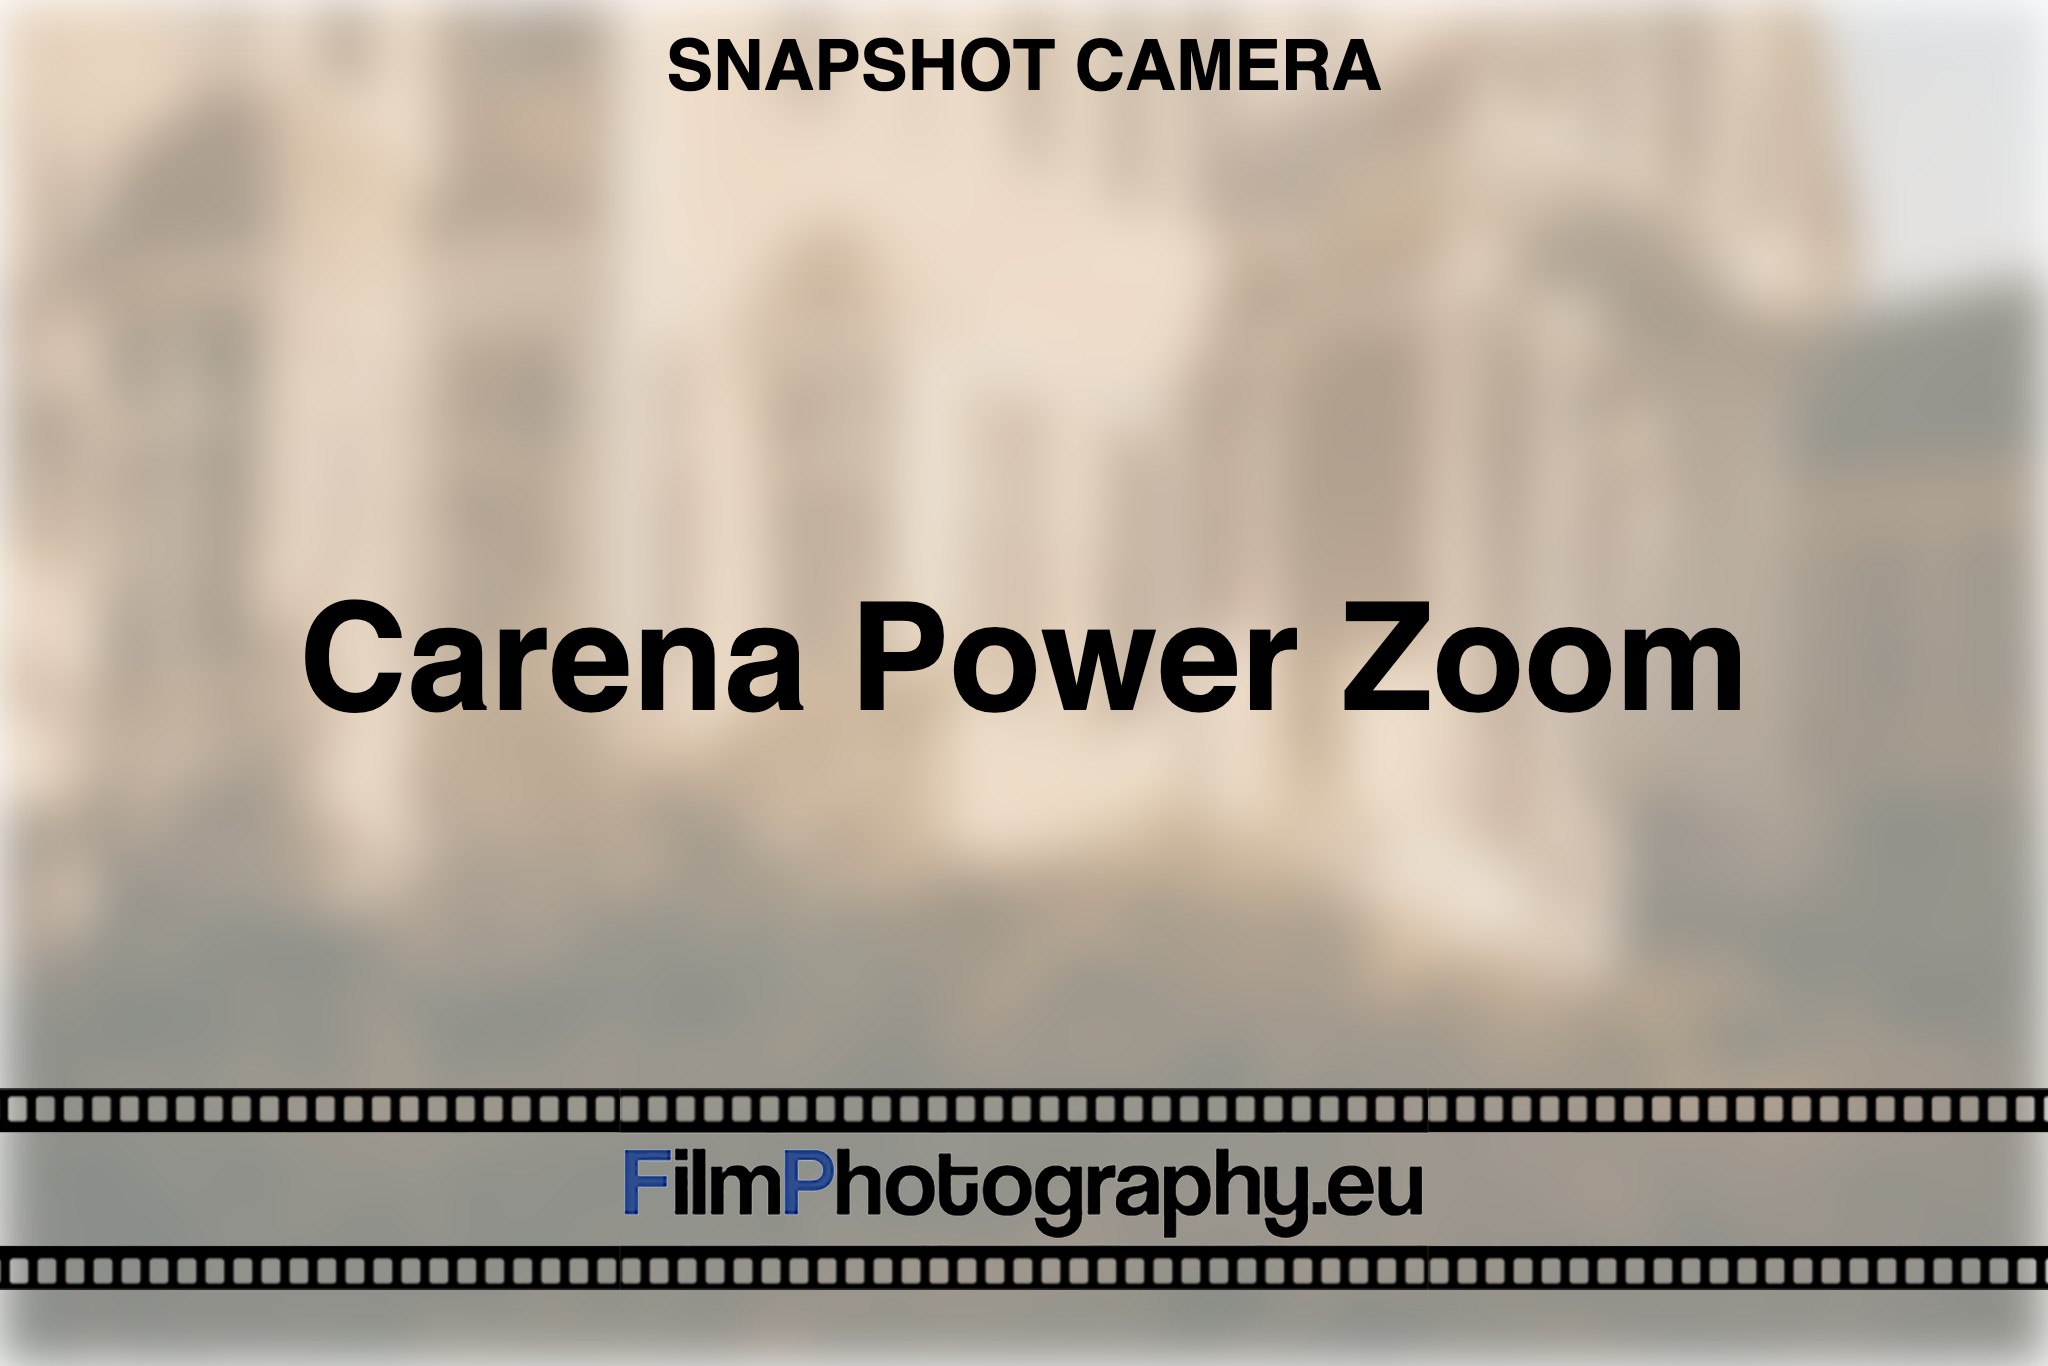 carena-power-zoom-snapshot-camera-bnv